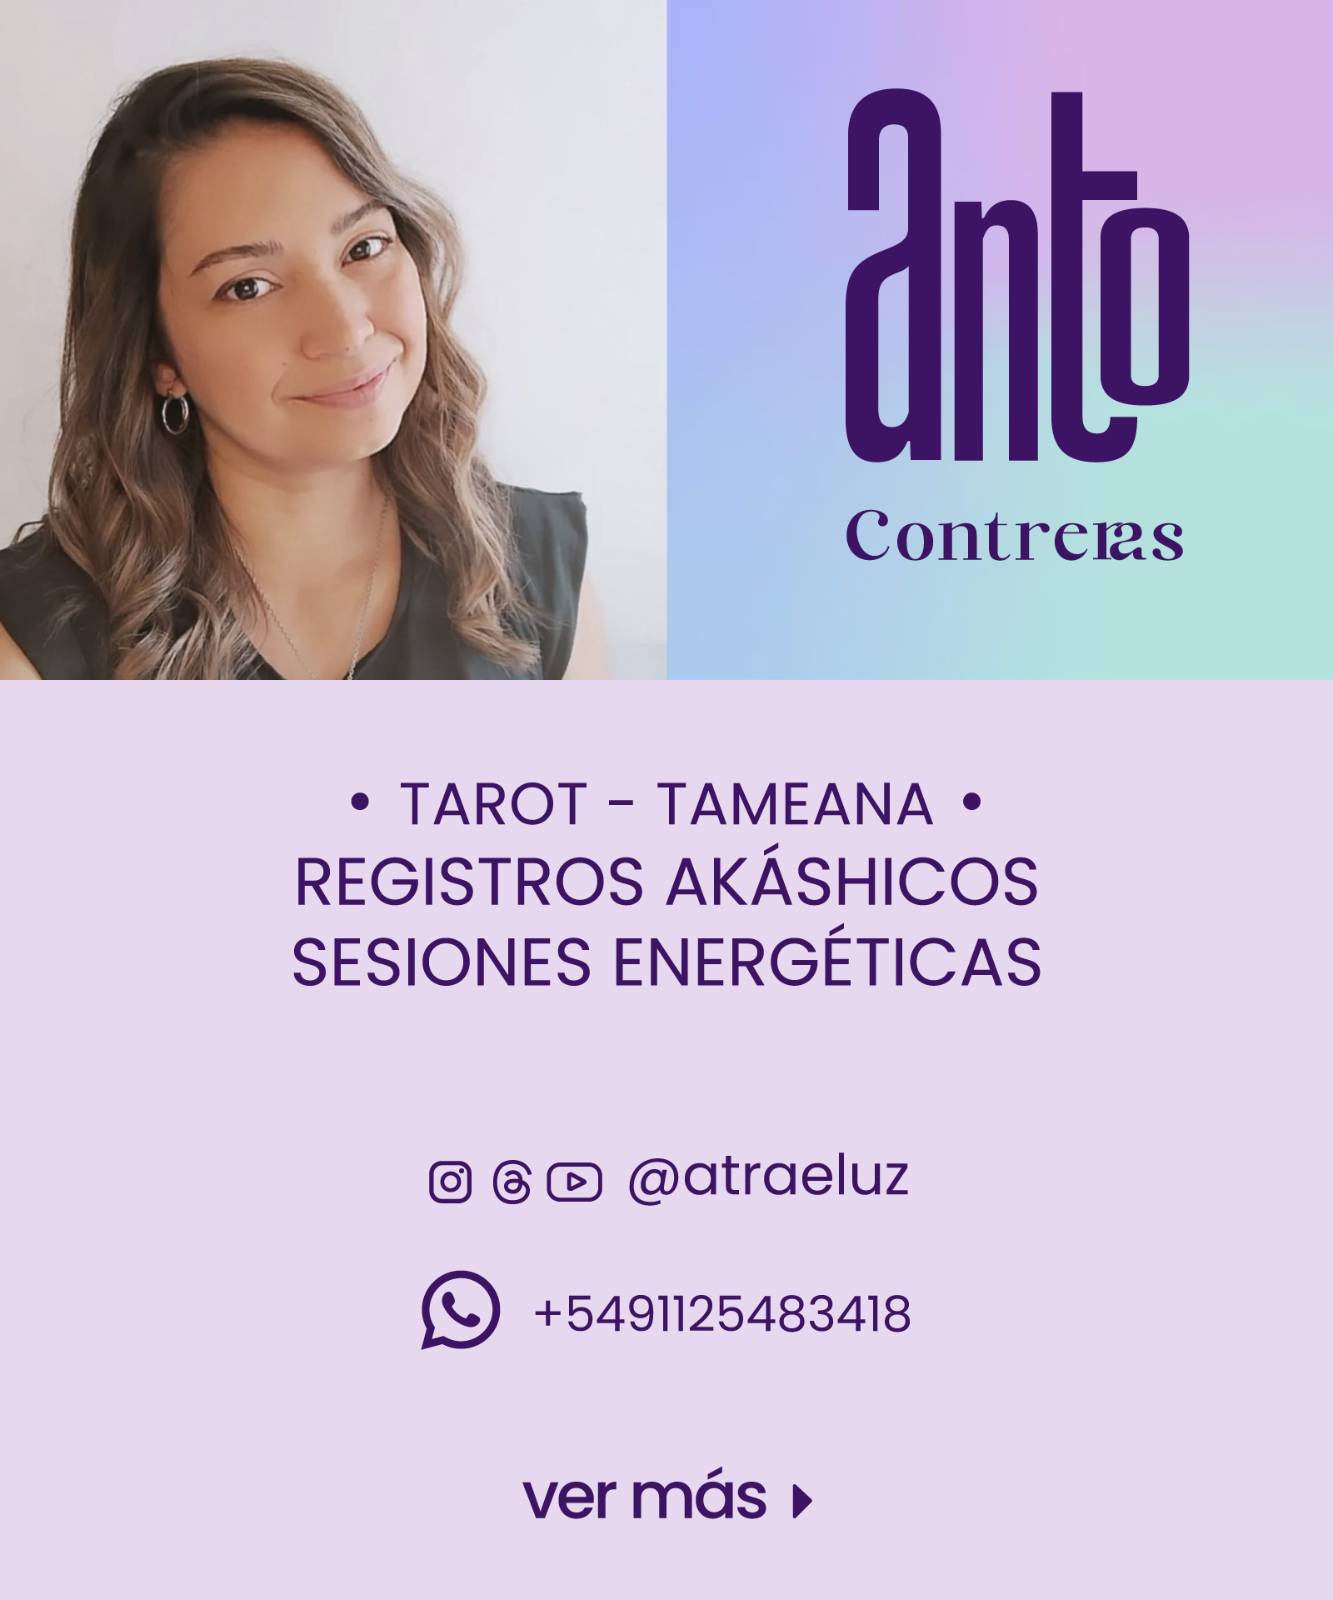 www.antocontreras.com